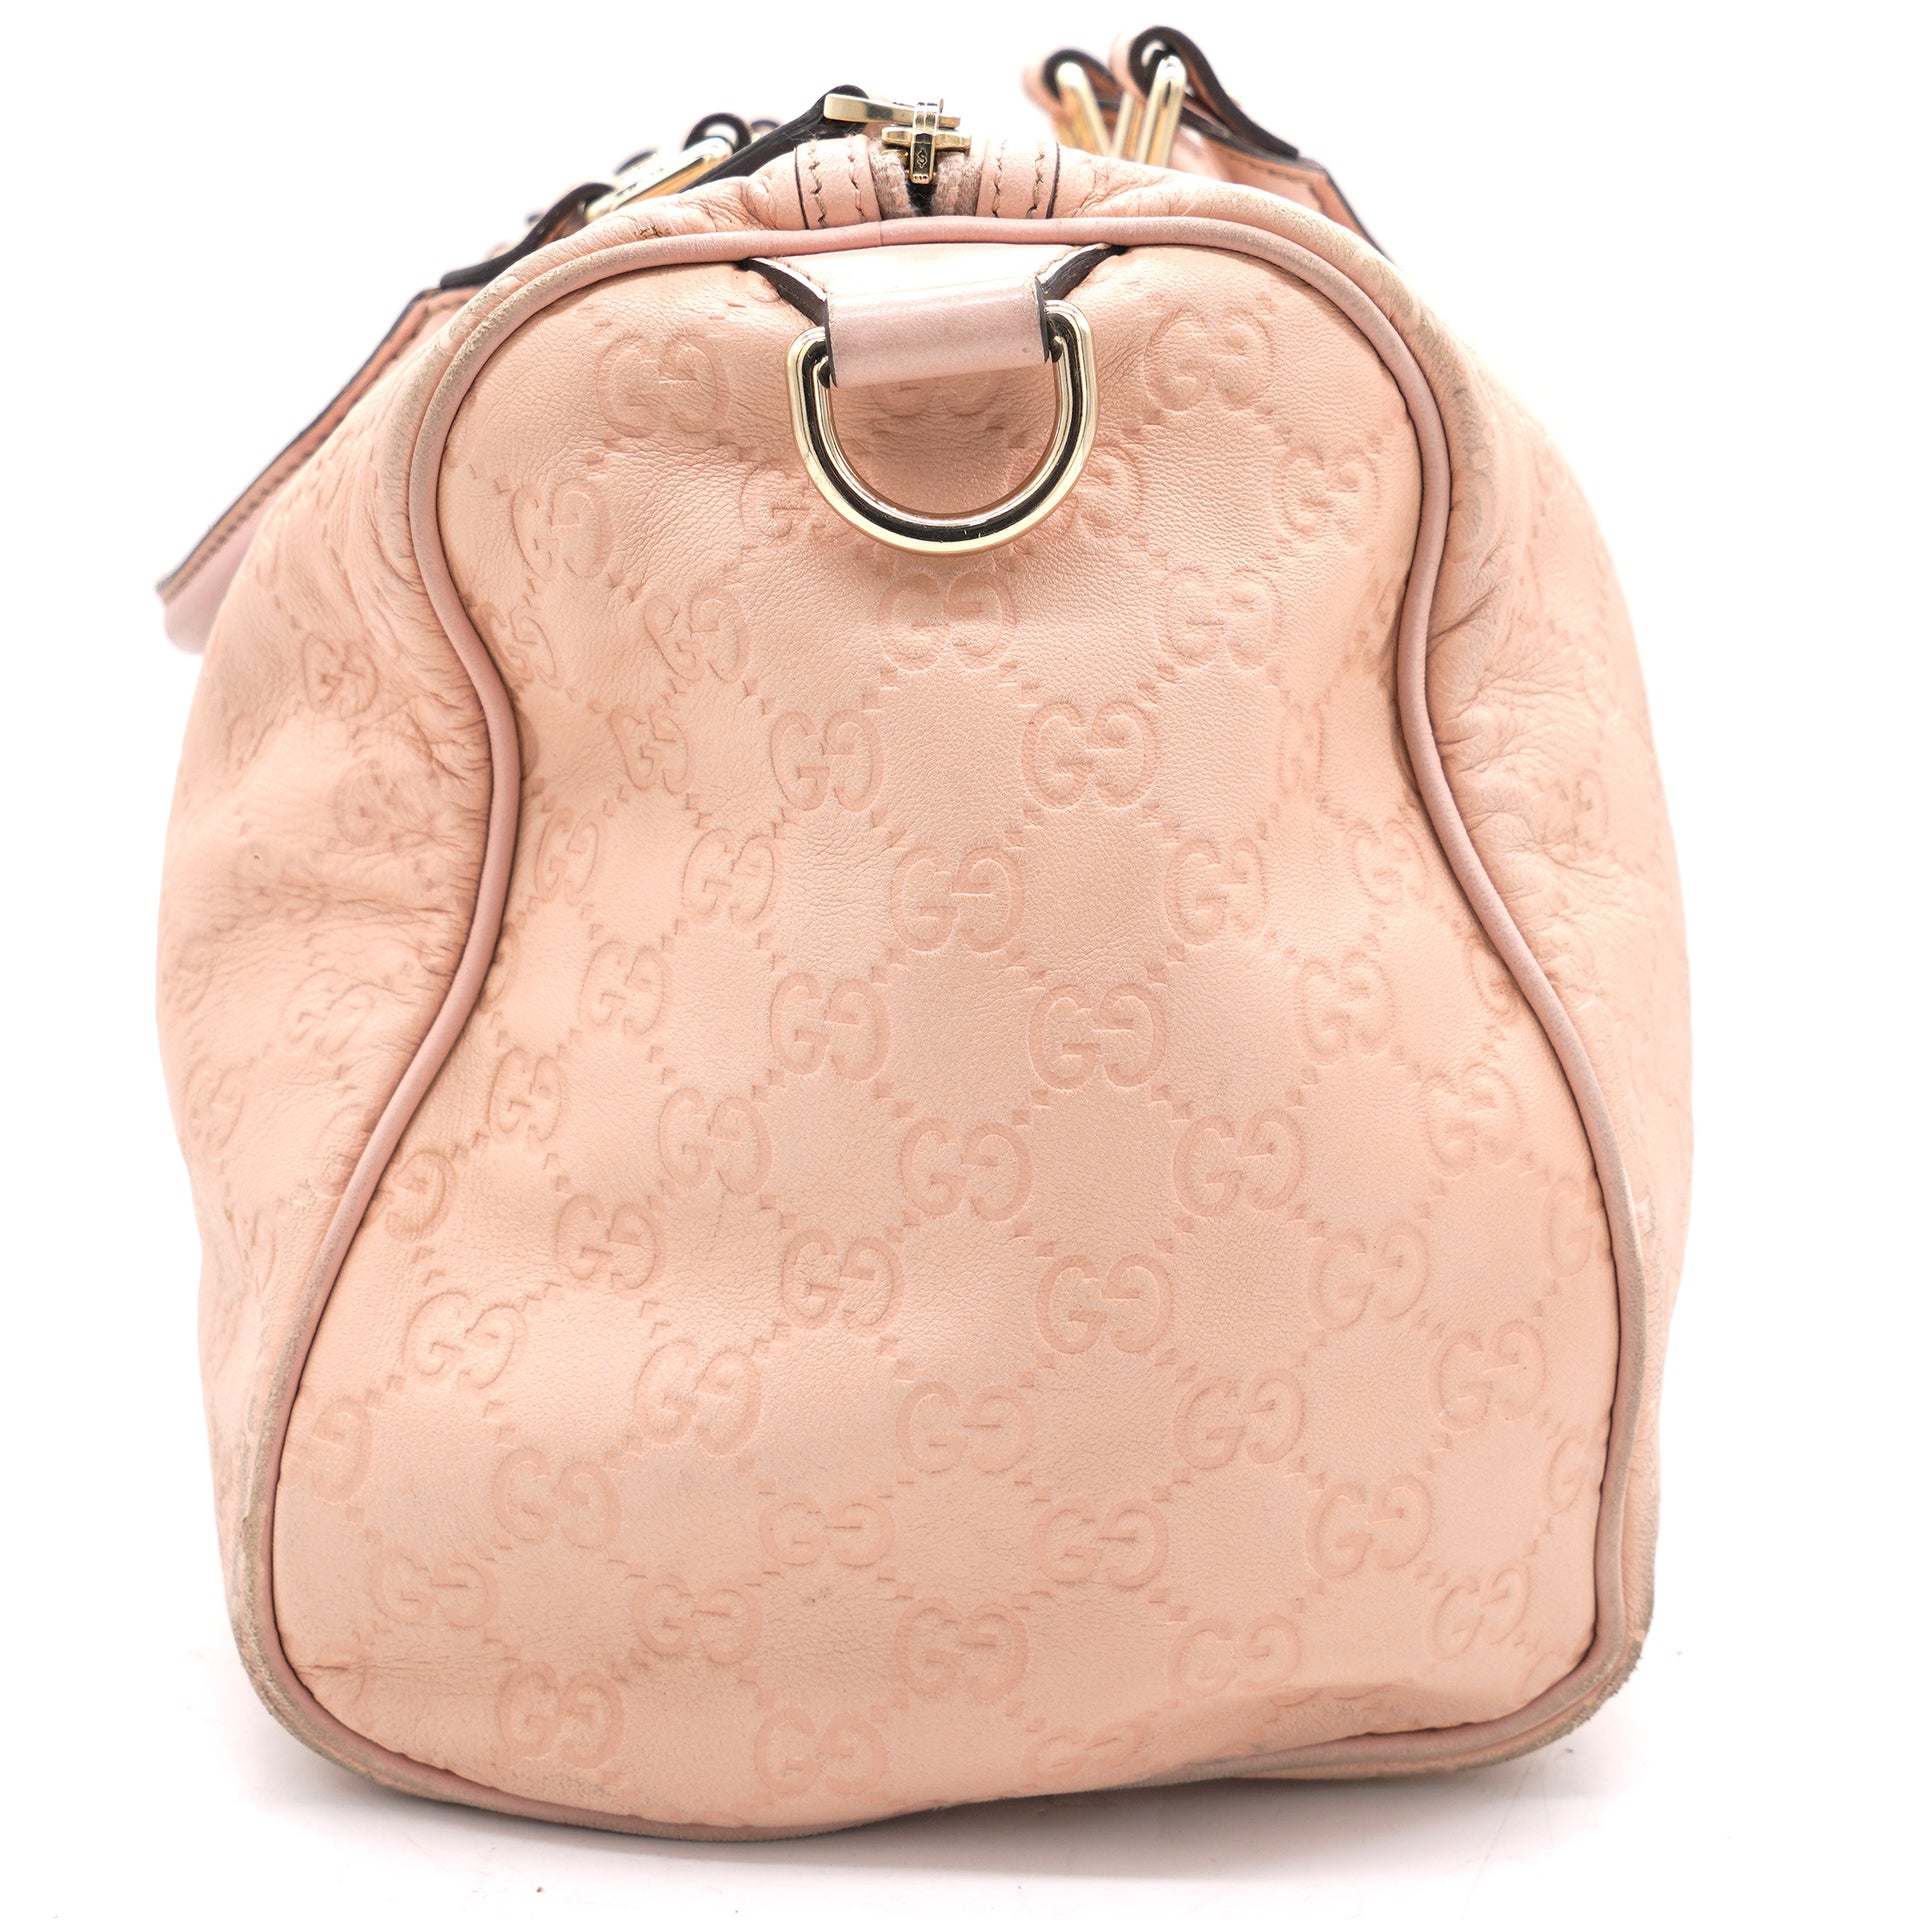 Guccissima Medium Joy Boston Bag Pink